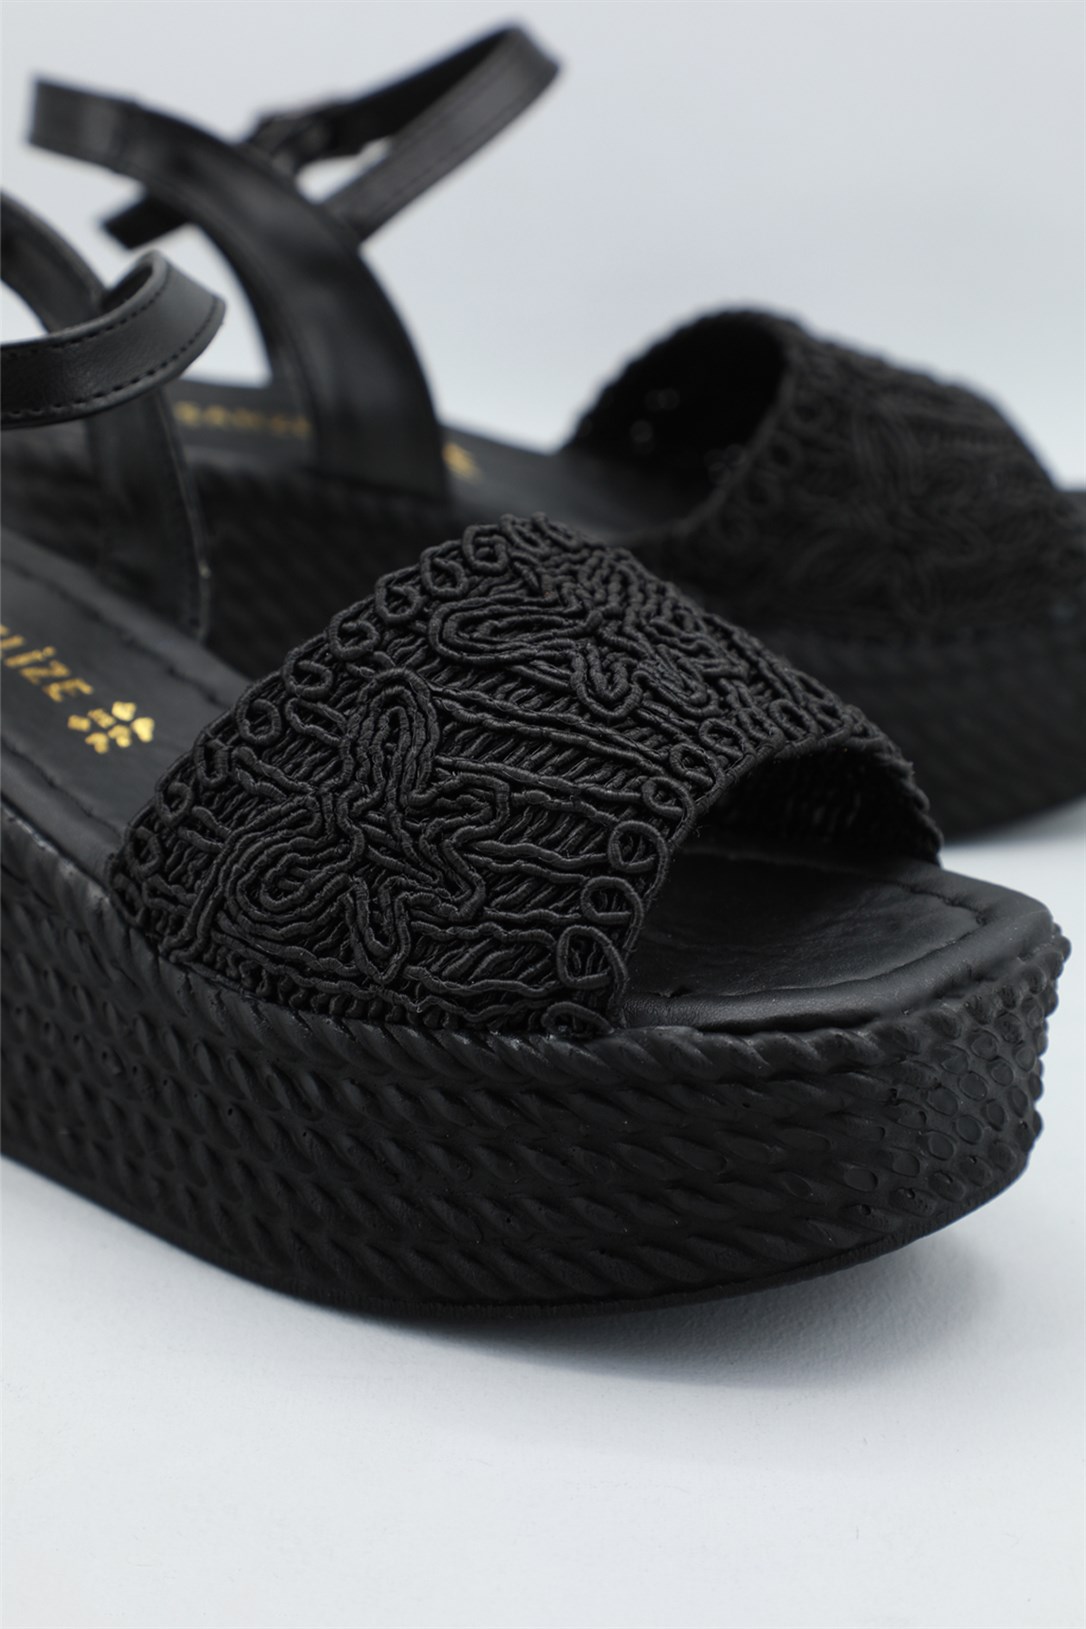 Beınsteps Hasır Örgülü Dolgu Topuk Siyah Kadın Sandalet Ş-101 | Ayakkabı  City